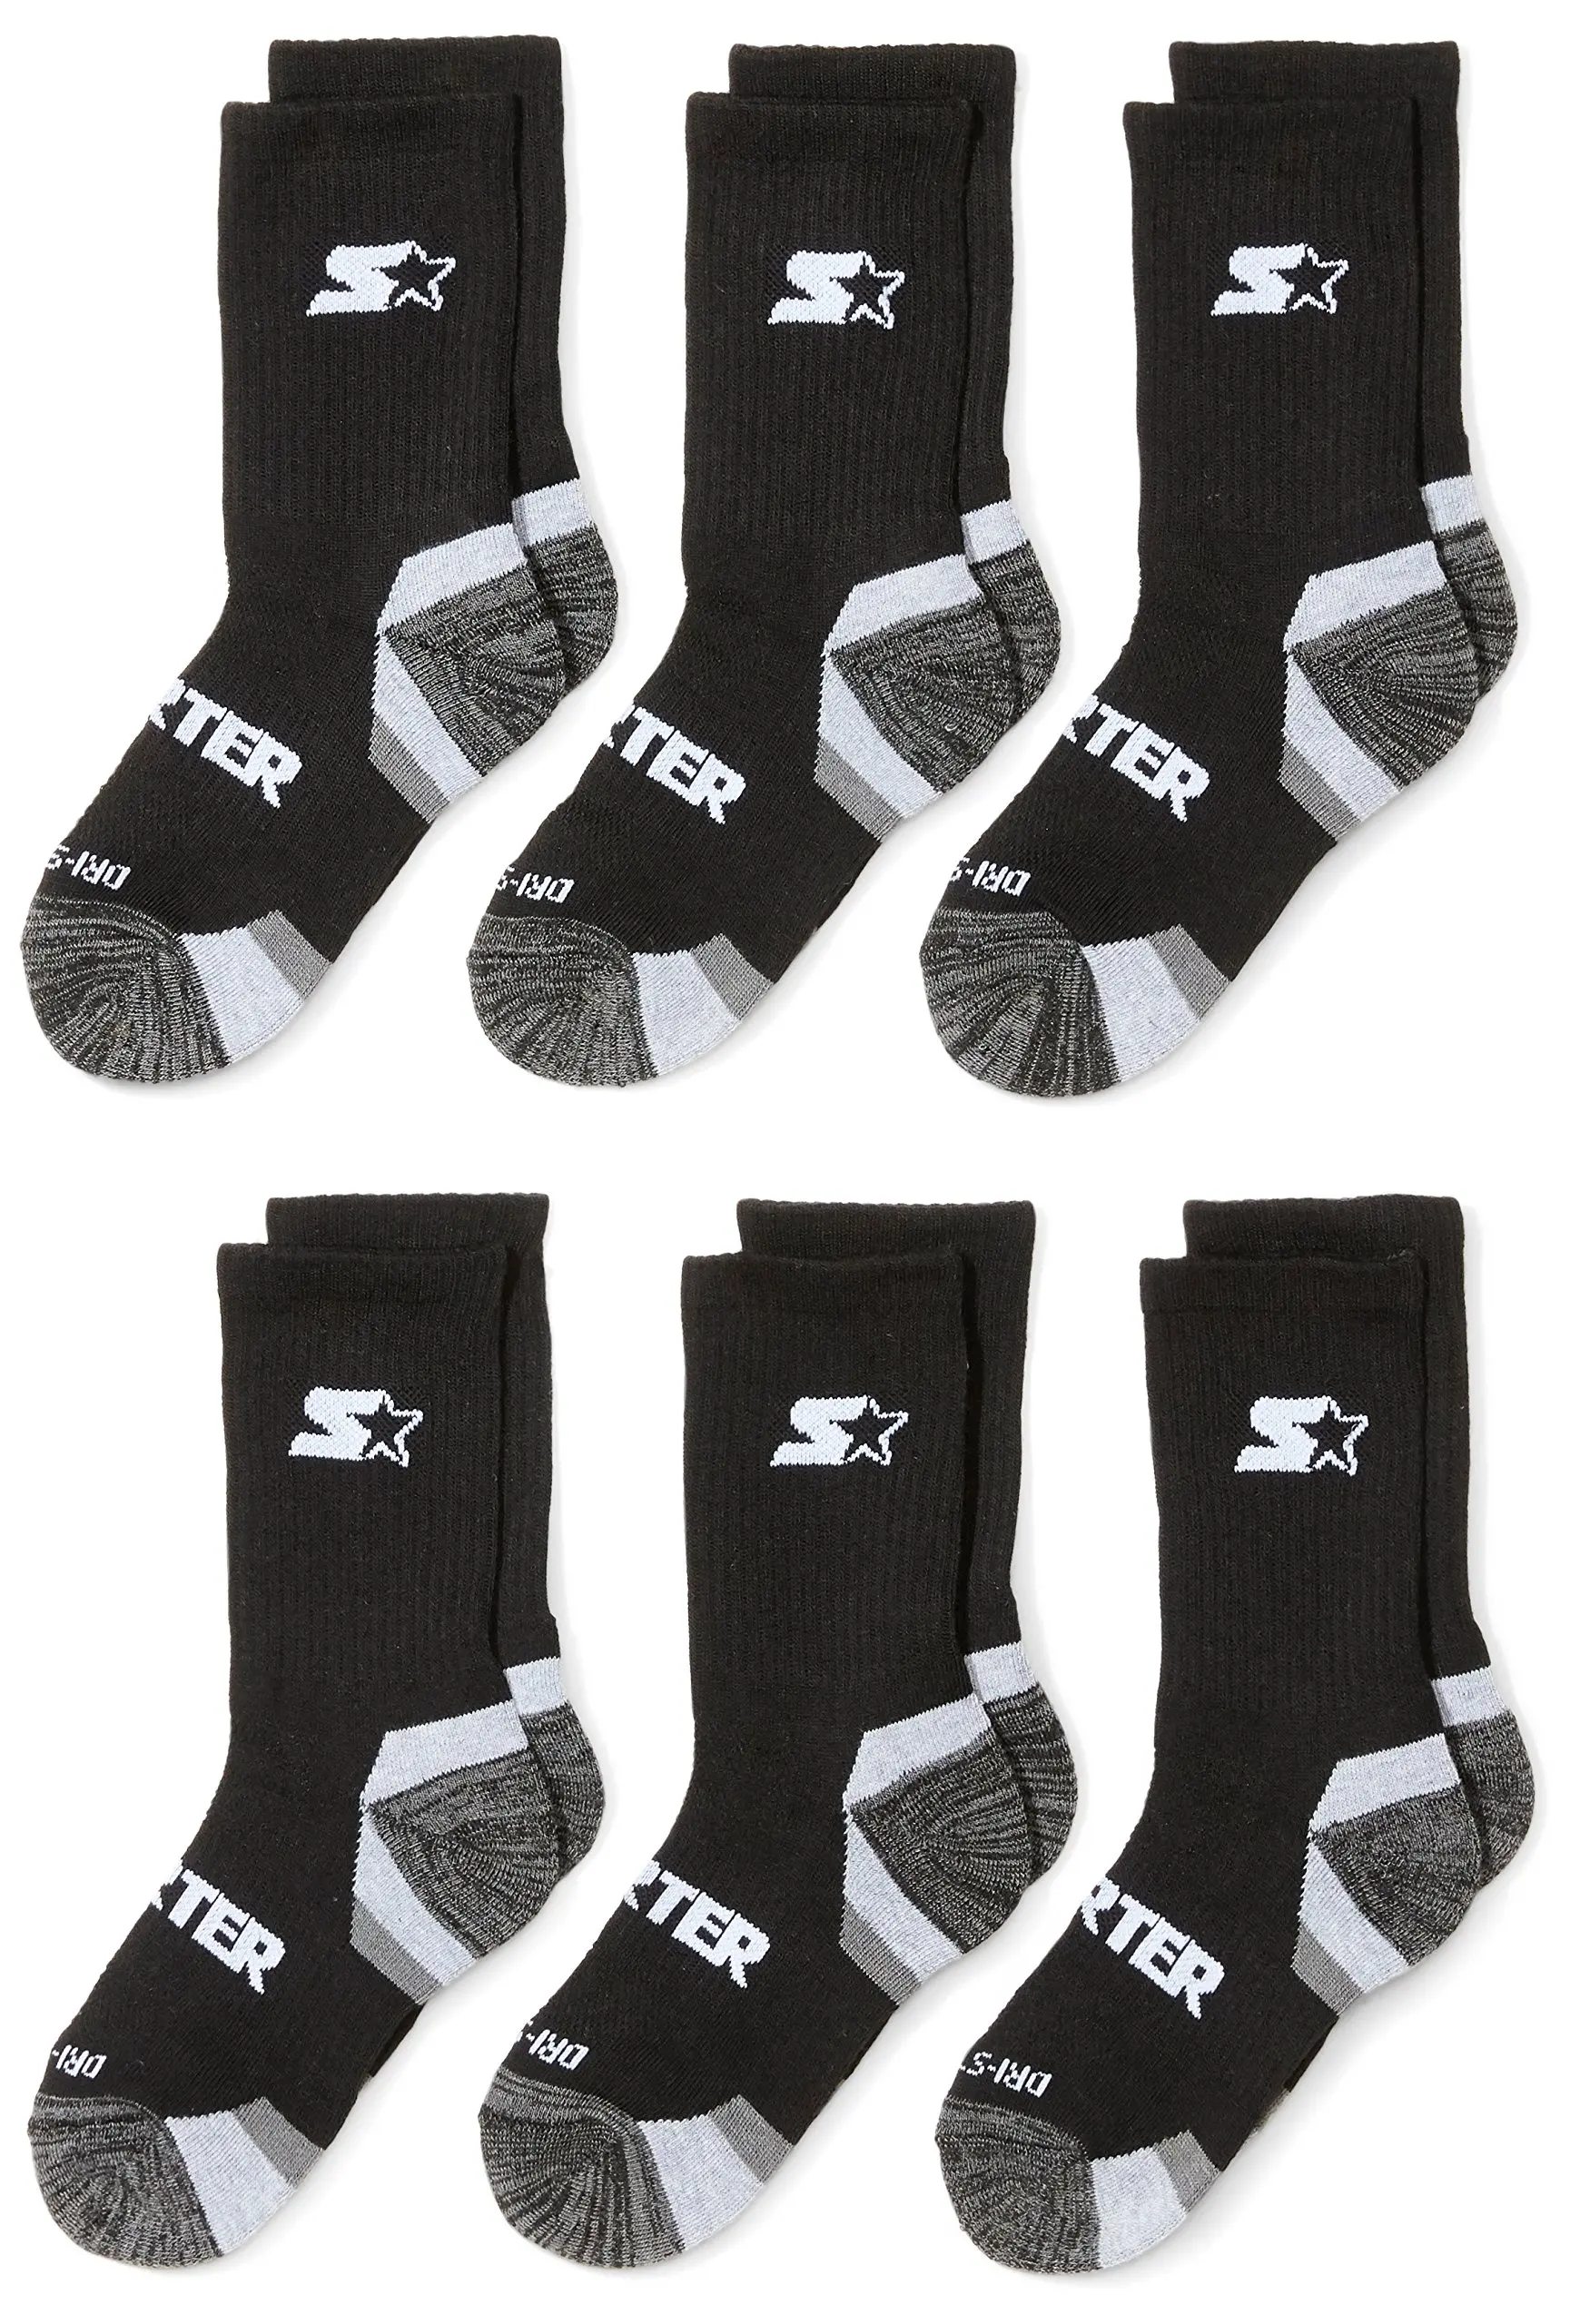 Starter Boys Socks Size Chart